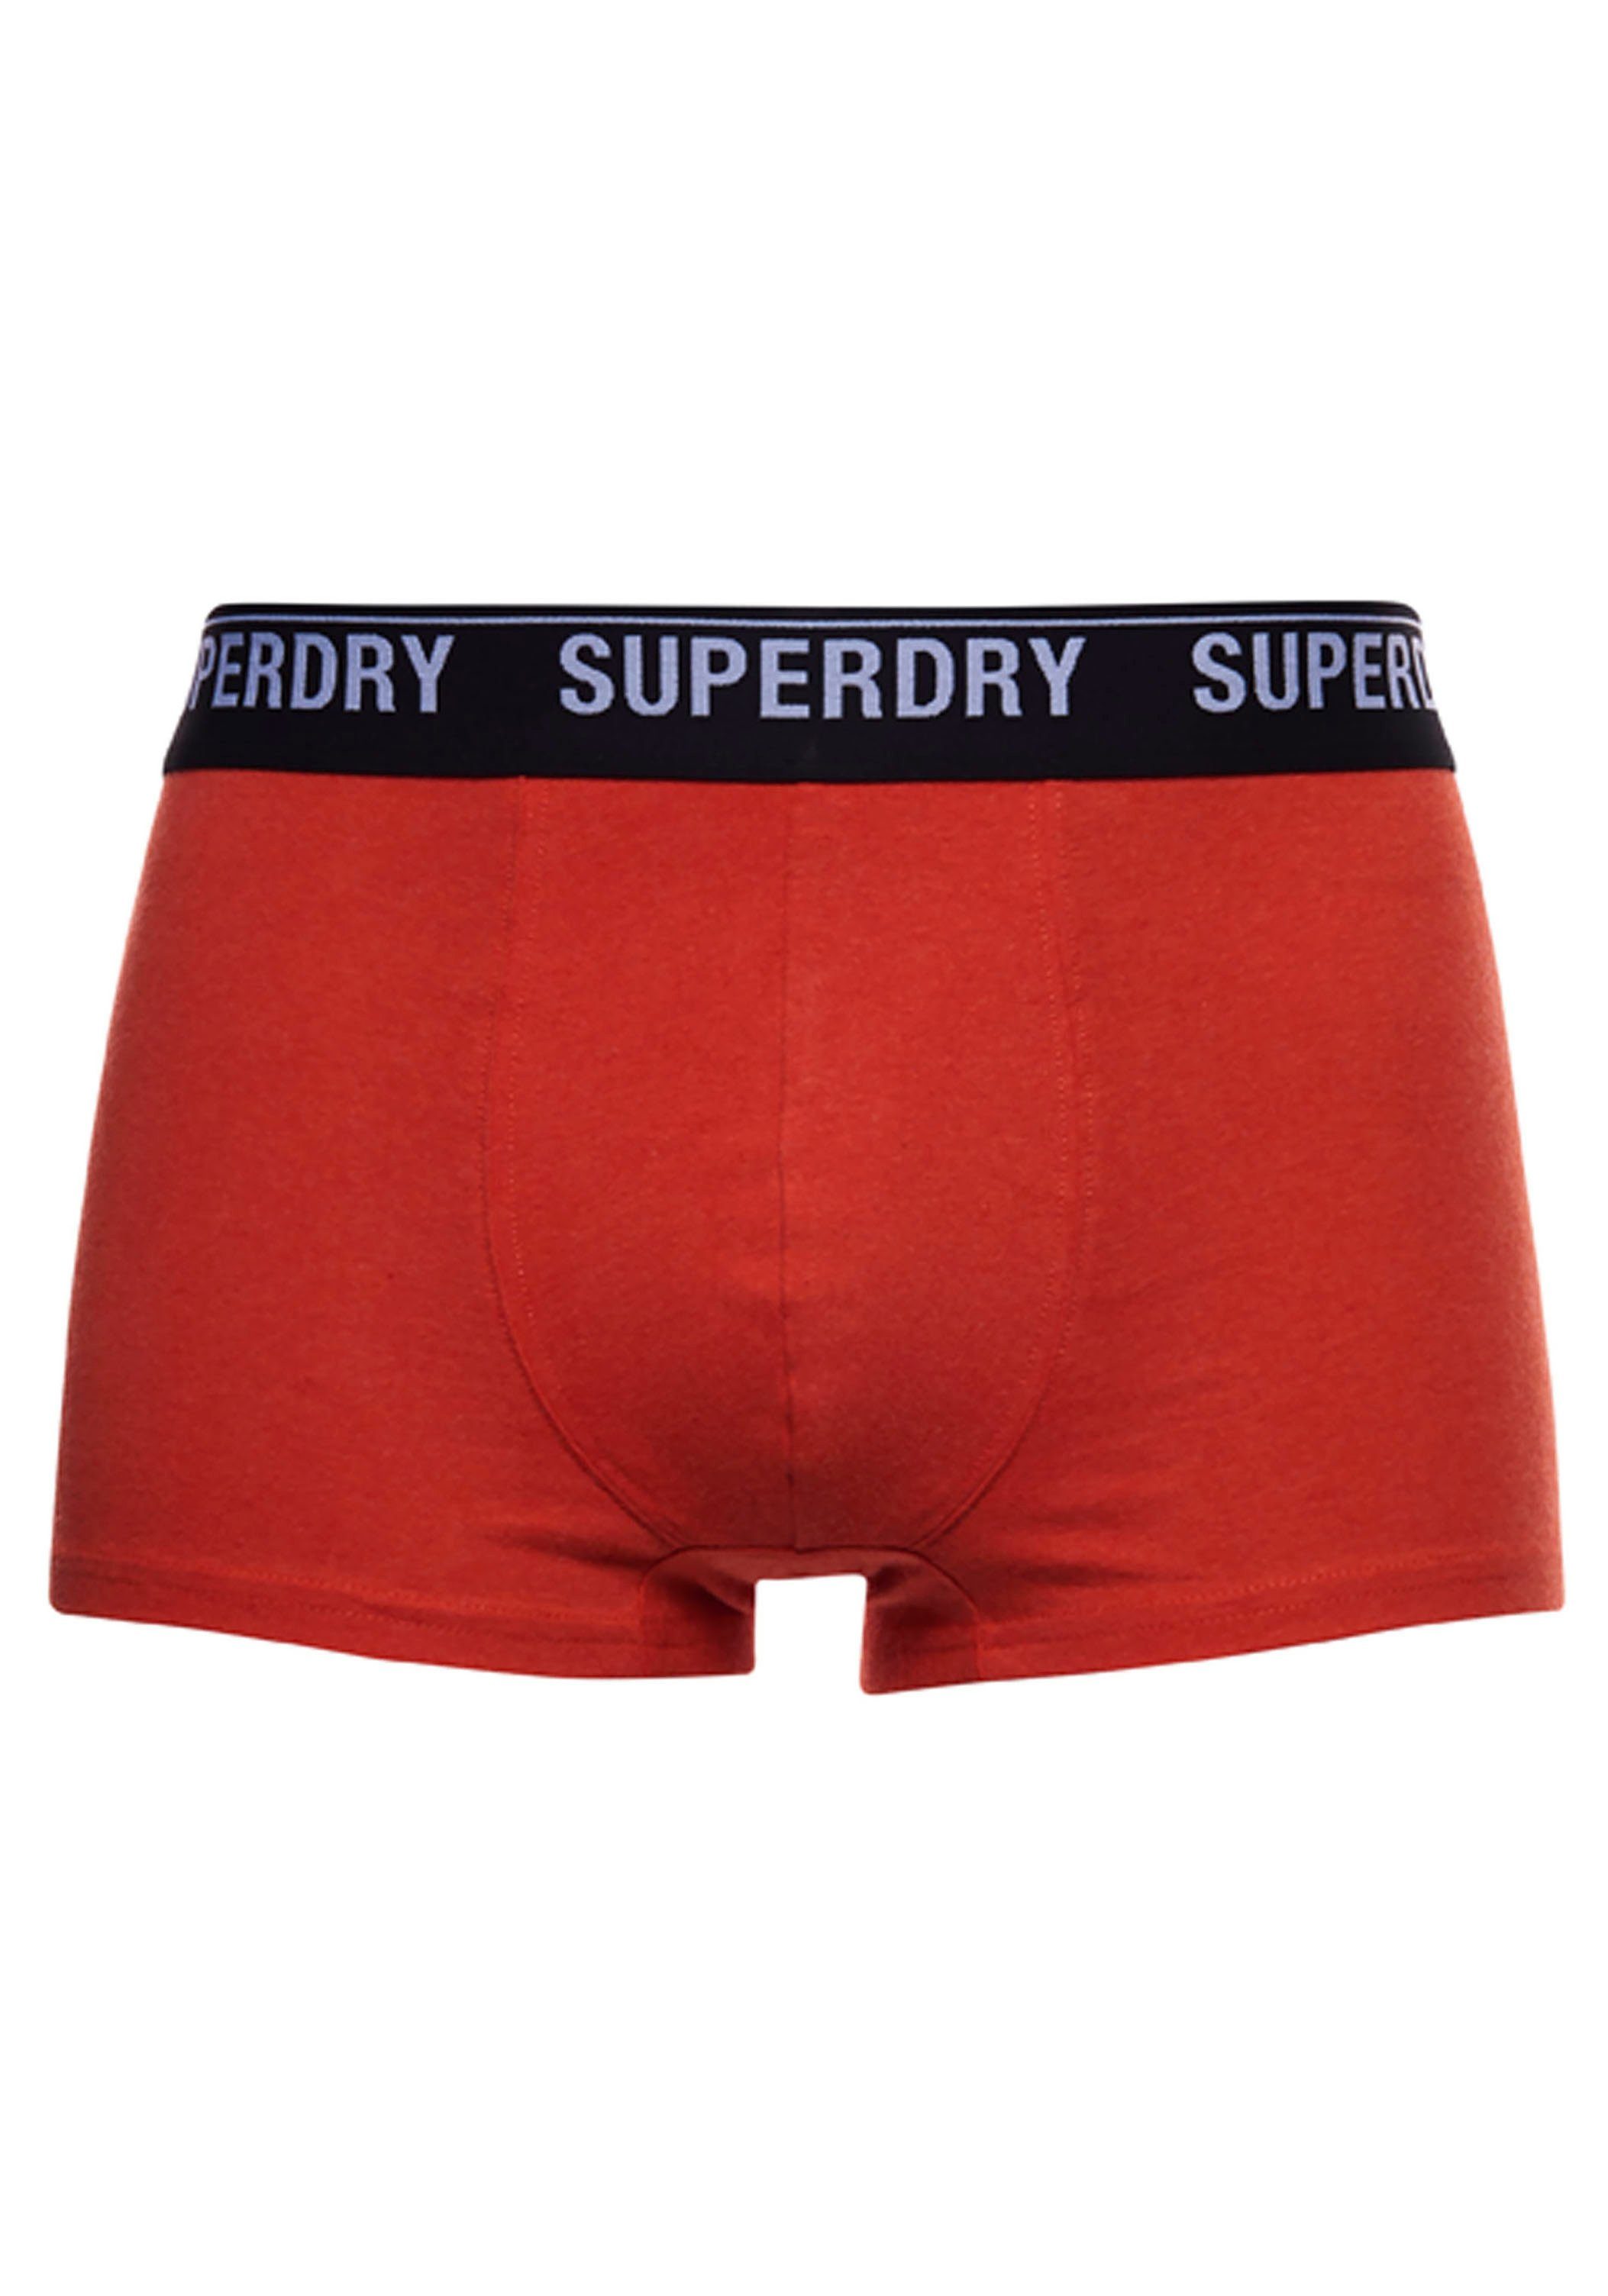 Superdry Boxer (3-St) grau, orange, schwarz